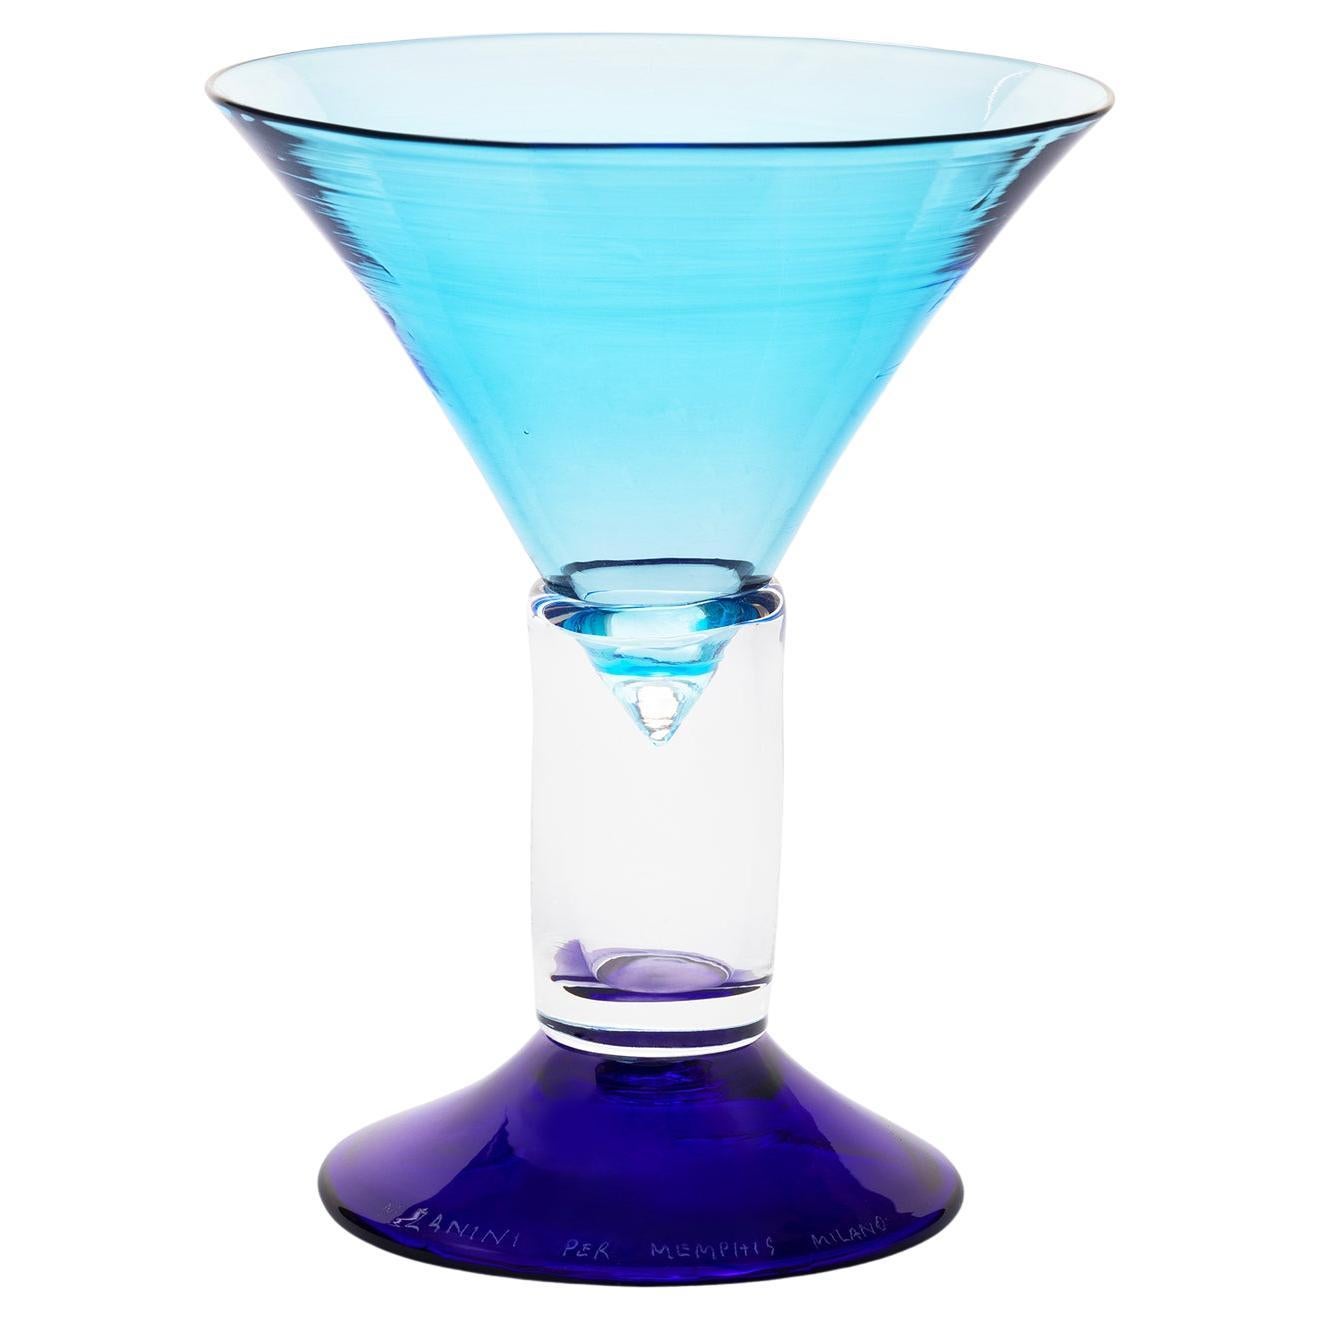 CASSIOPEA Glass in Clear and Blue de Marco Zanini pour la collection Memphis Milano